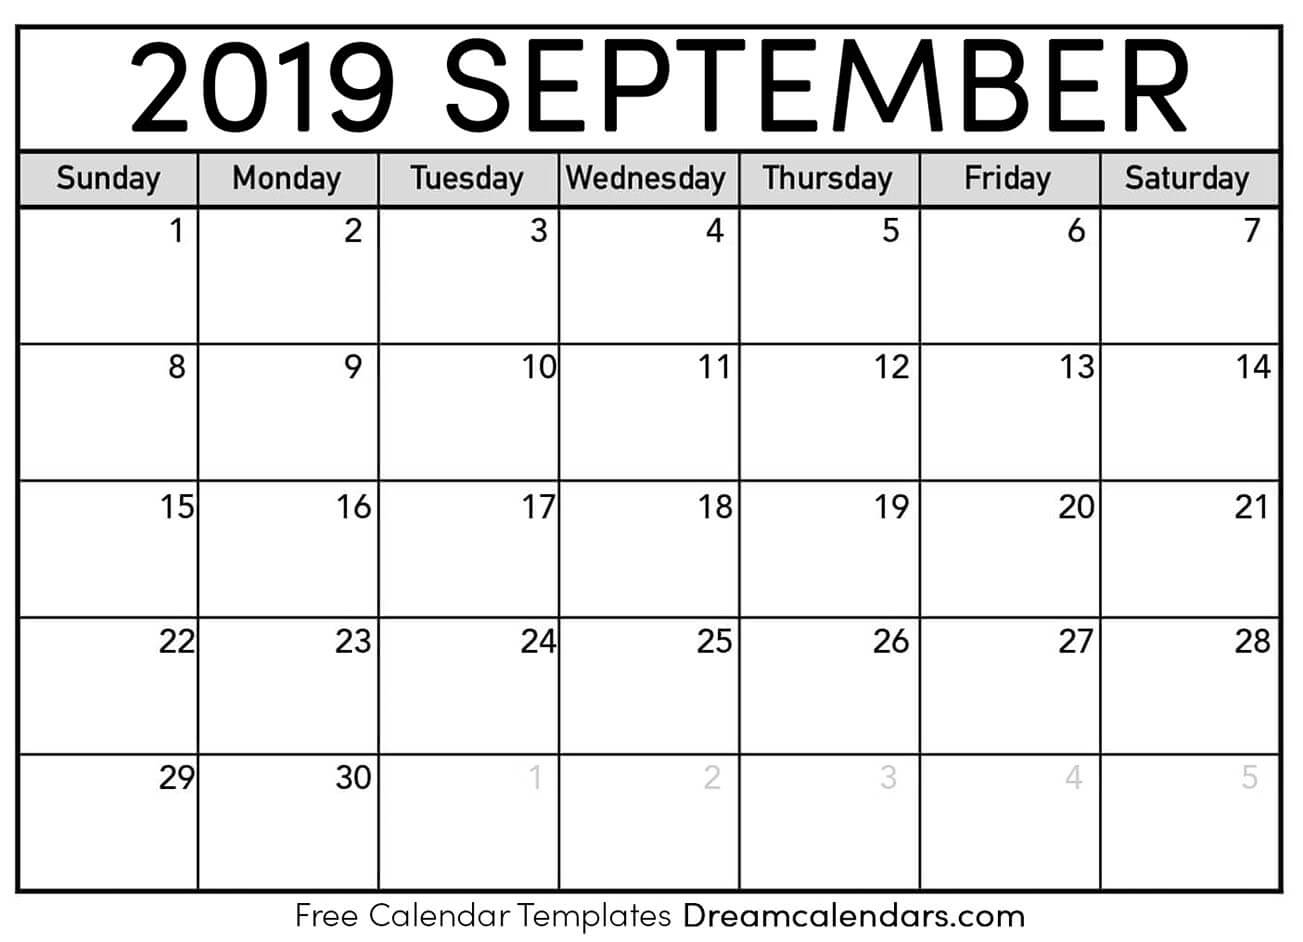 Printable September 2019 Calendar Perky Calendar Showing Monday Through Friday